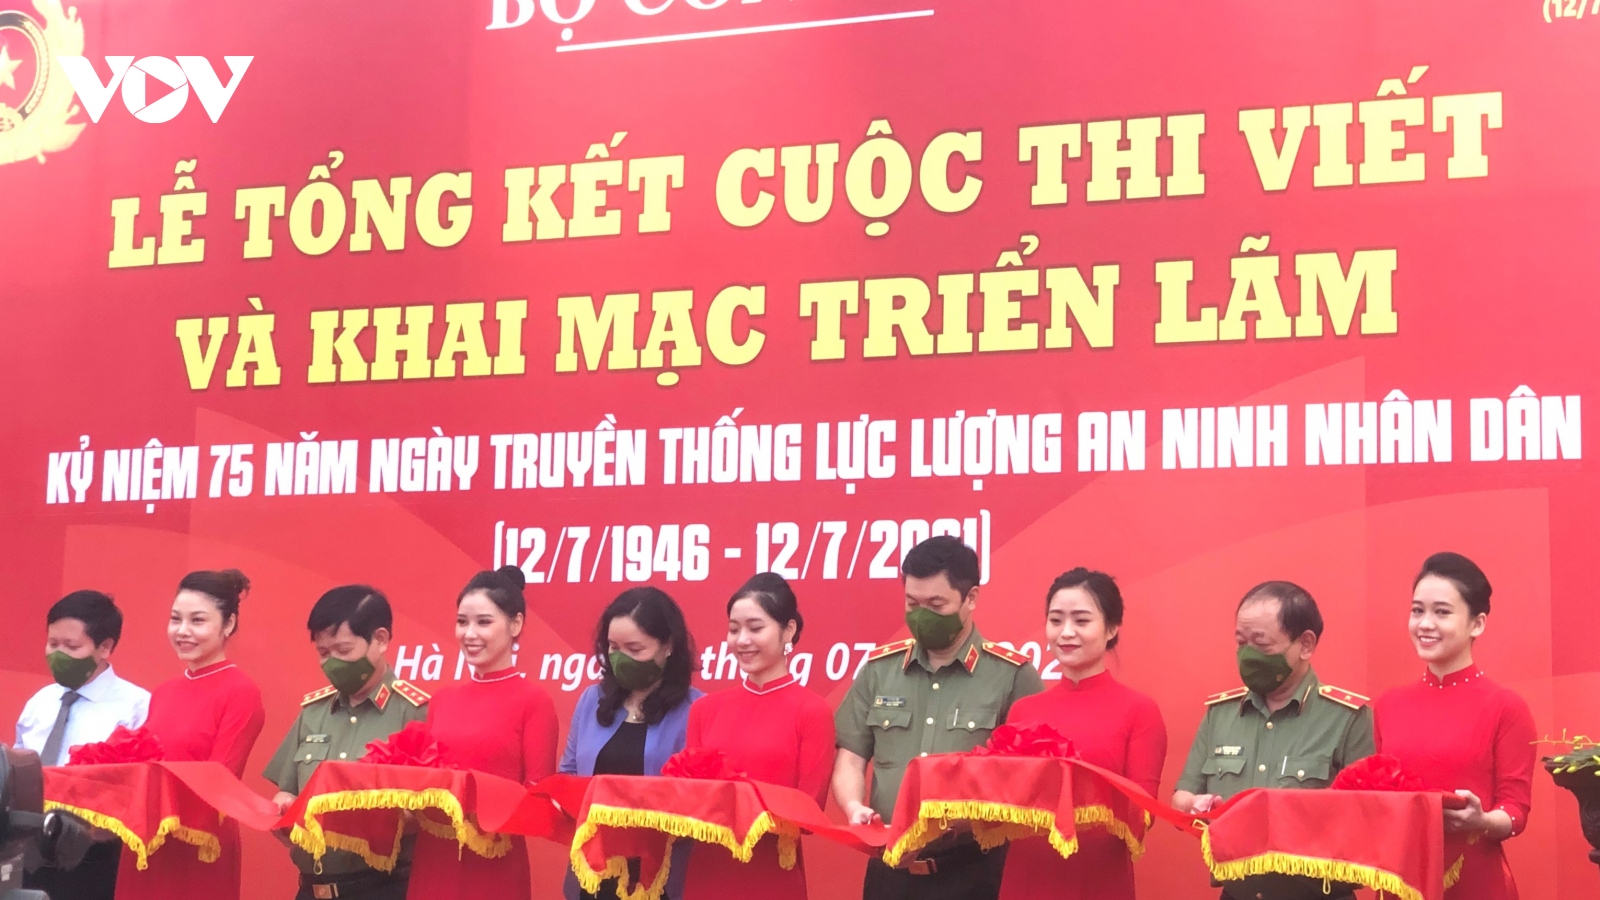 Trao giải cuộc thi viết và khai mạc triển lãm “75 năm lực lượng ANND Việt Nam Anh hùng”